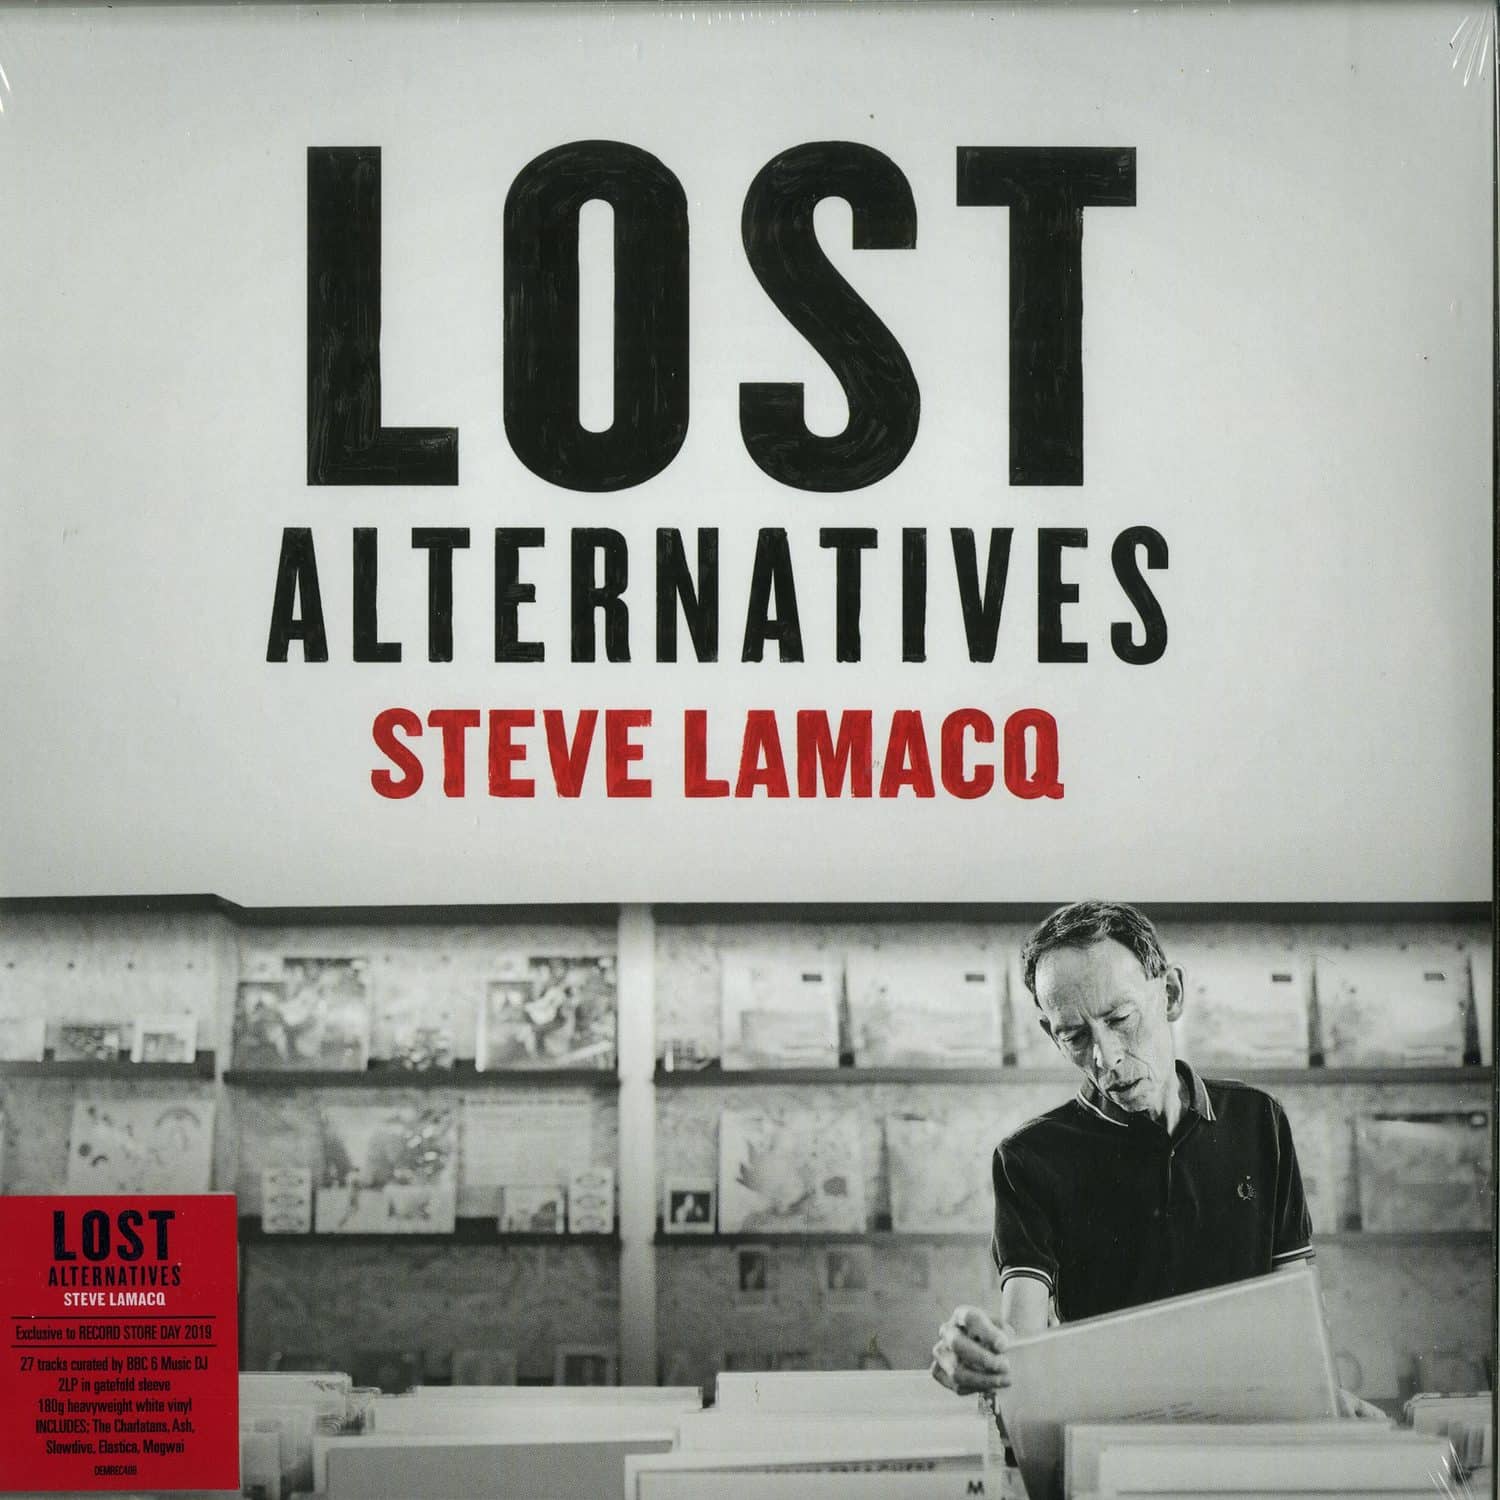 Steve Lamacq - LOST ALTERNATIVES 